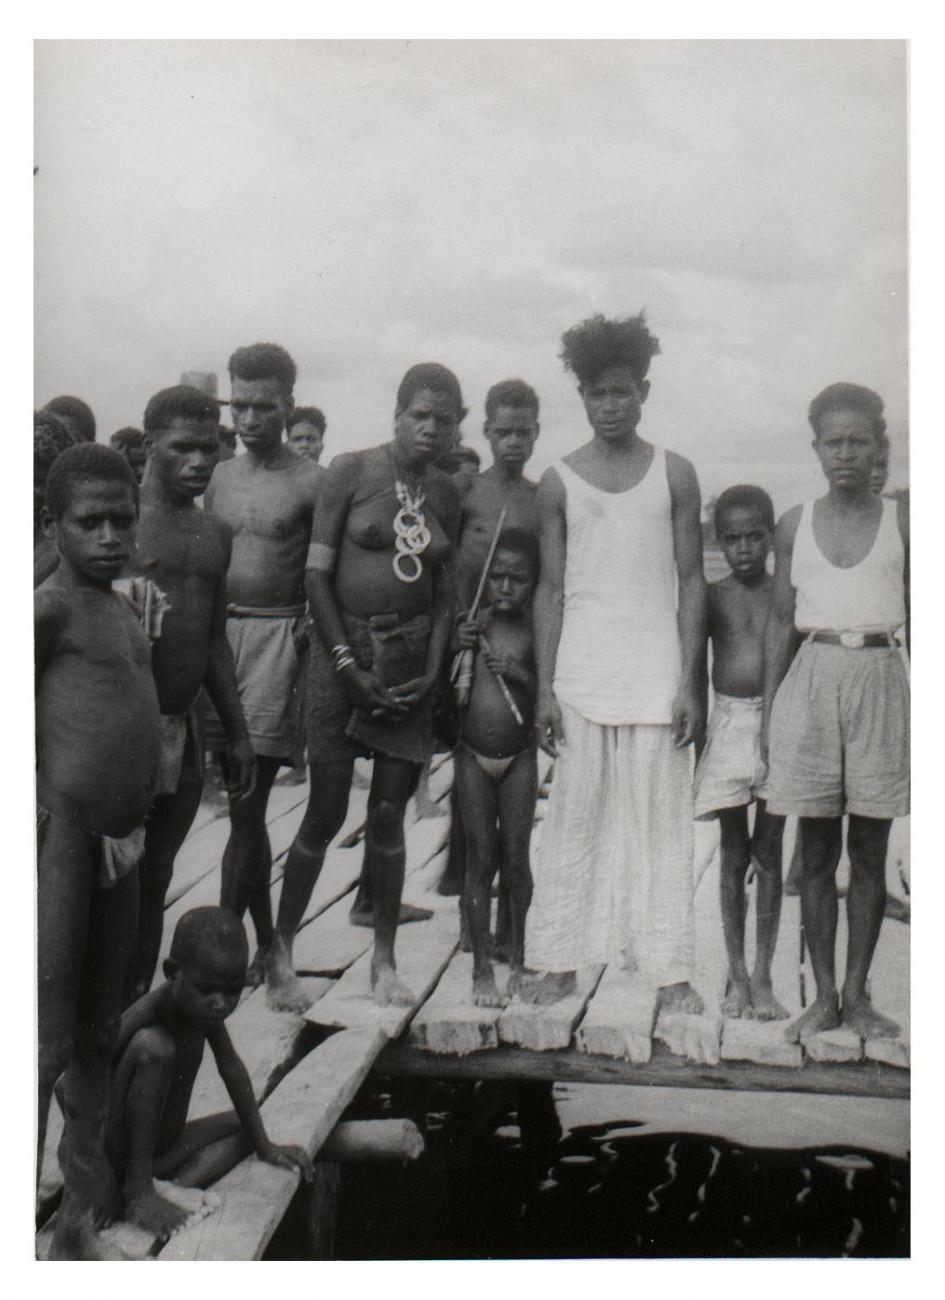 BD/54/17 - 
Aermaroe, groepsfoto Papoea&#039;s
